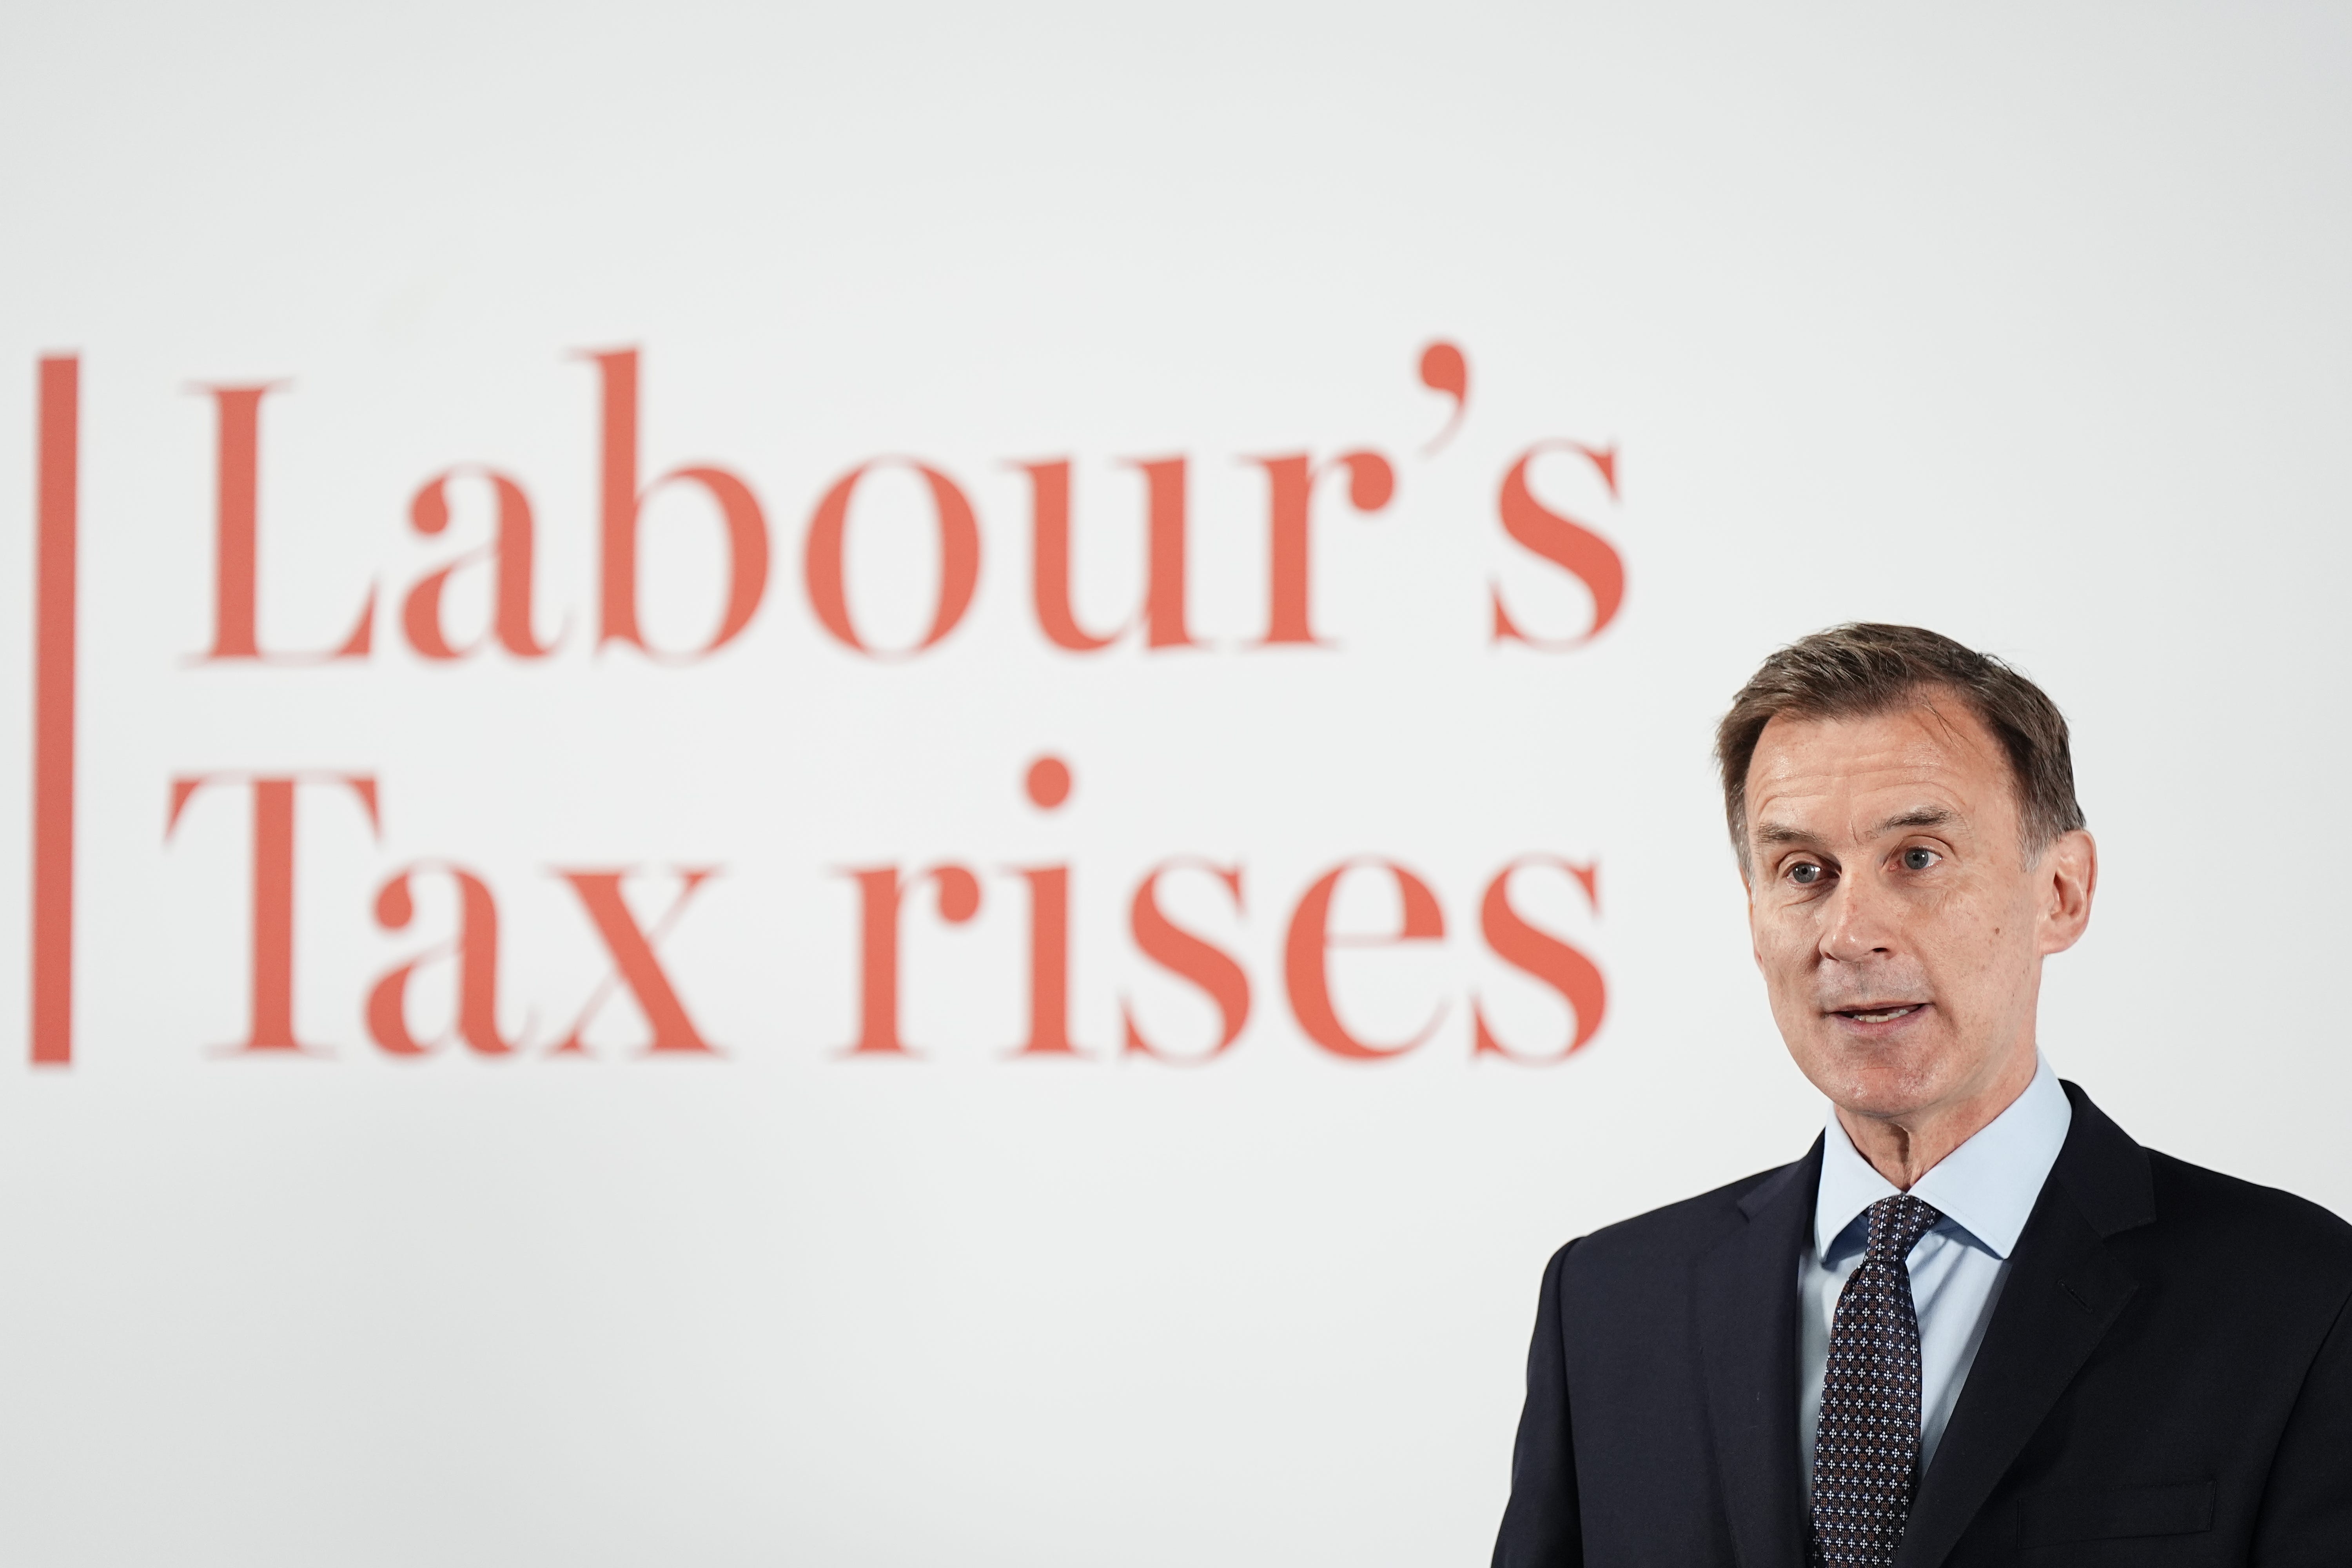 Chancellor Jeremy Hunt blasted Labour’s economic plans